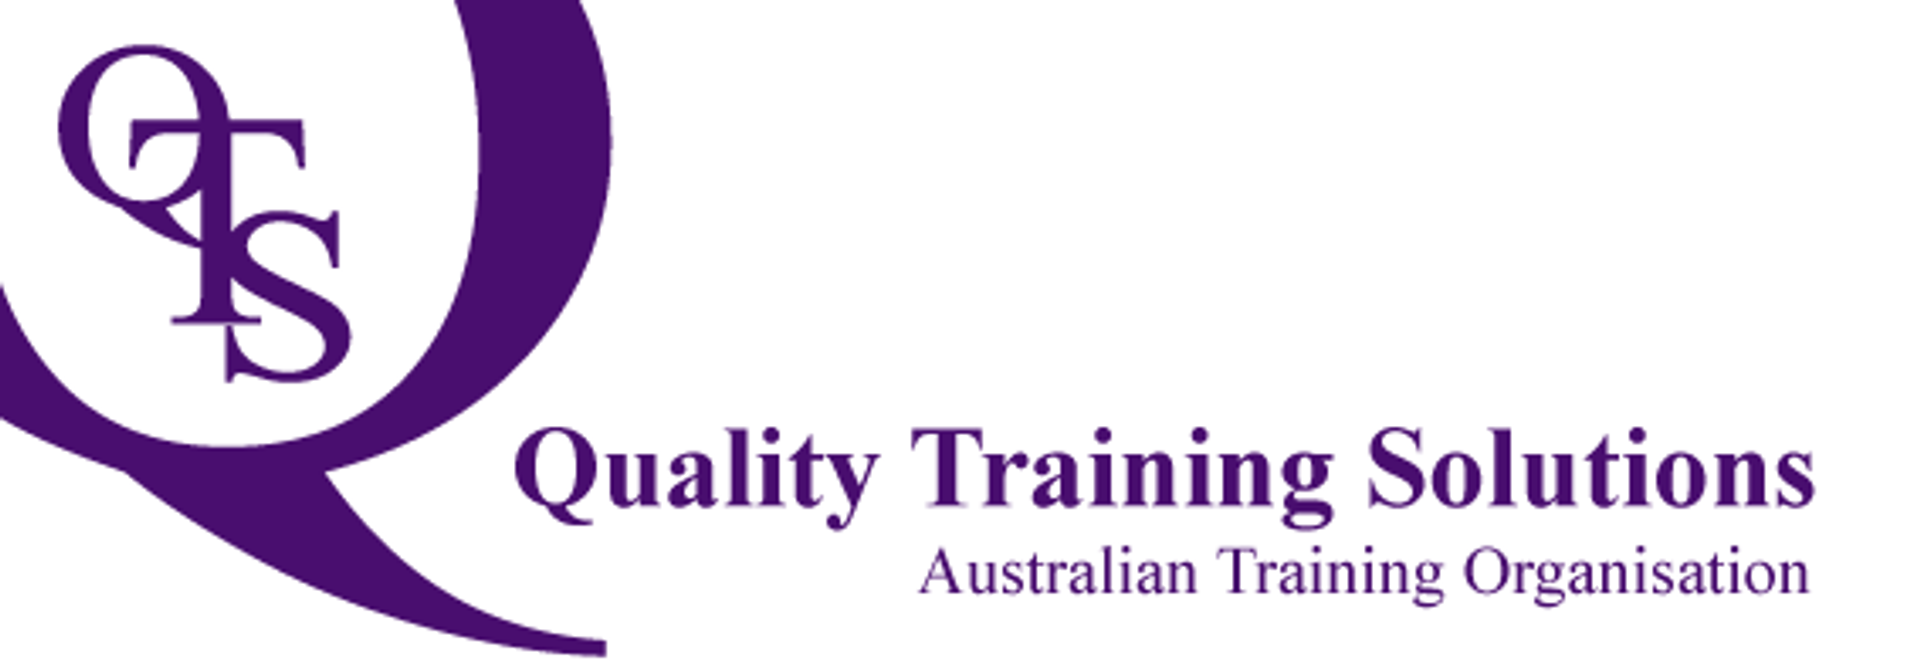 QTS - Tổ chức giáo dục đào tạo Australia